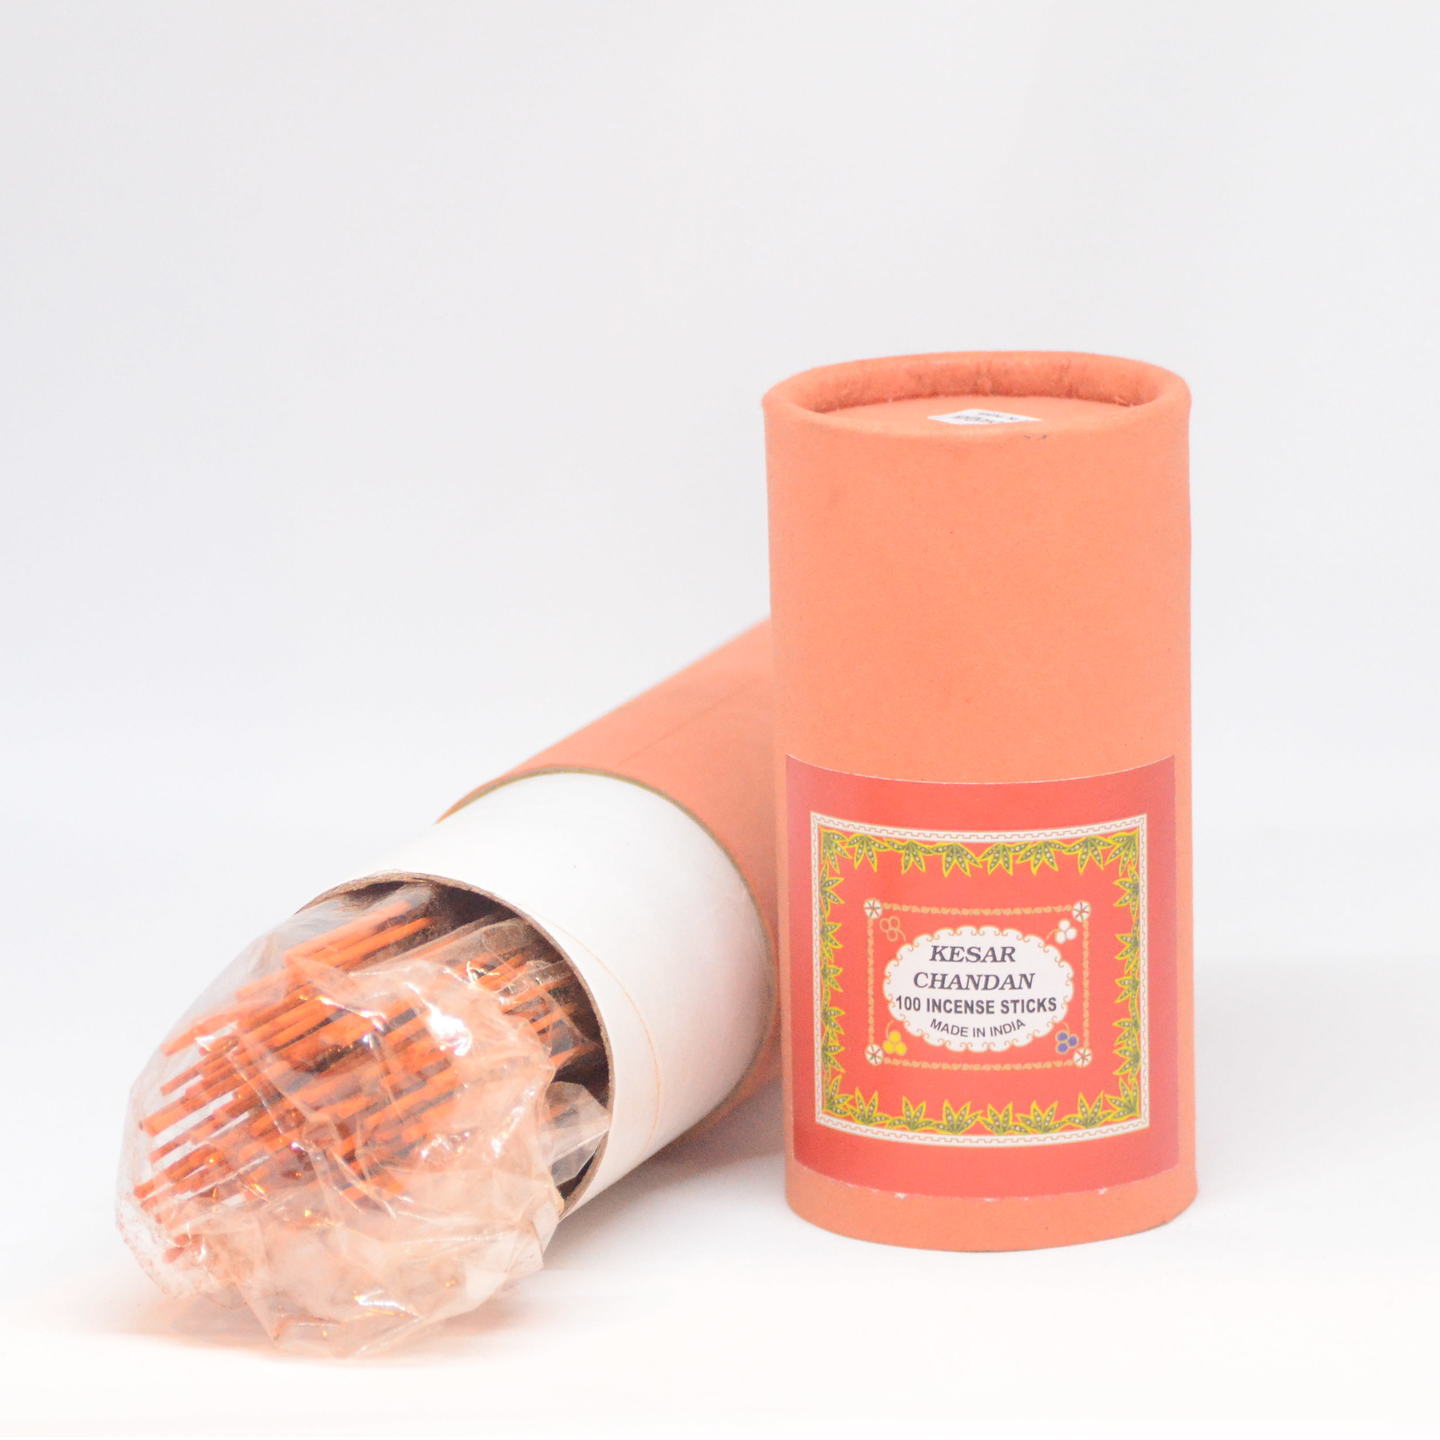 Premium Hand Rolled Incense Sticks - Kesar Chandan